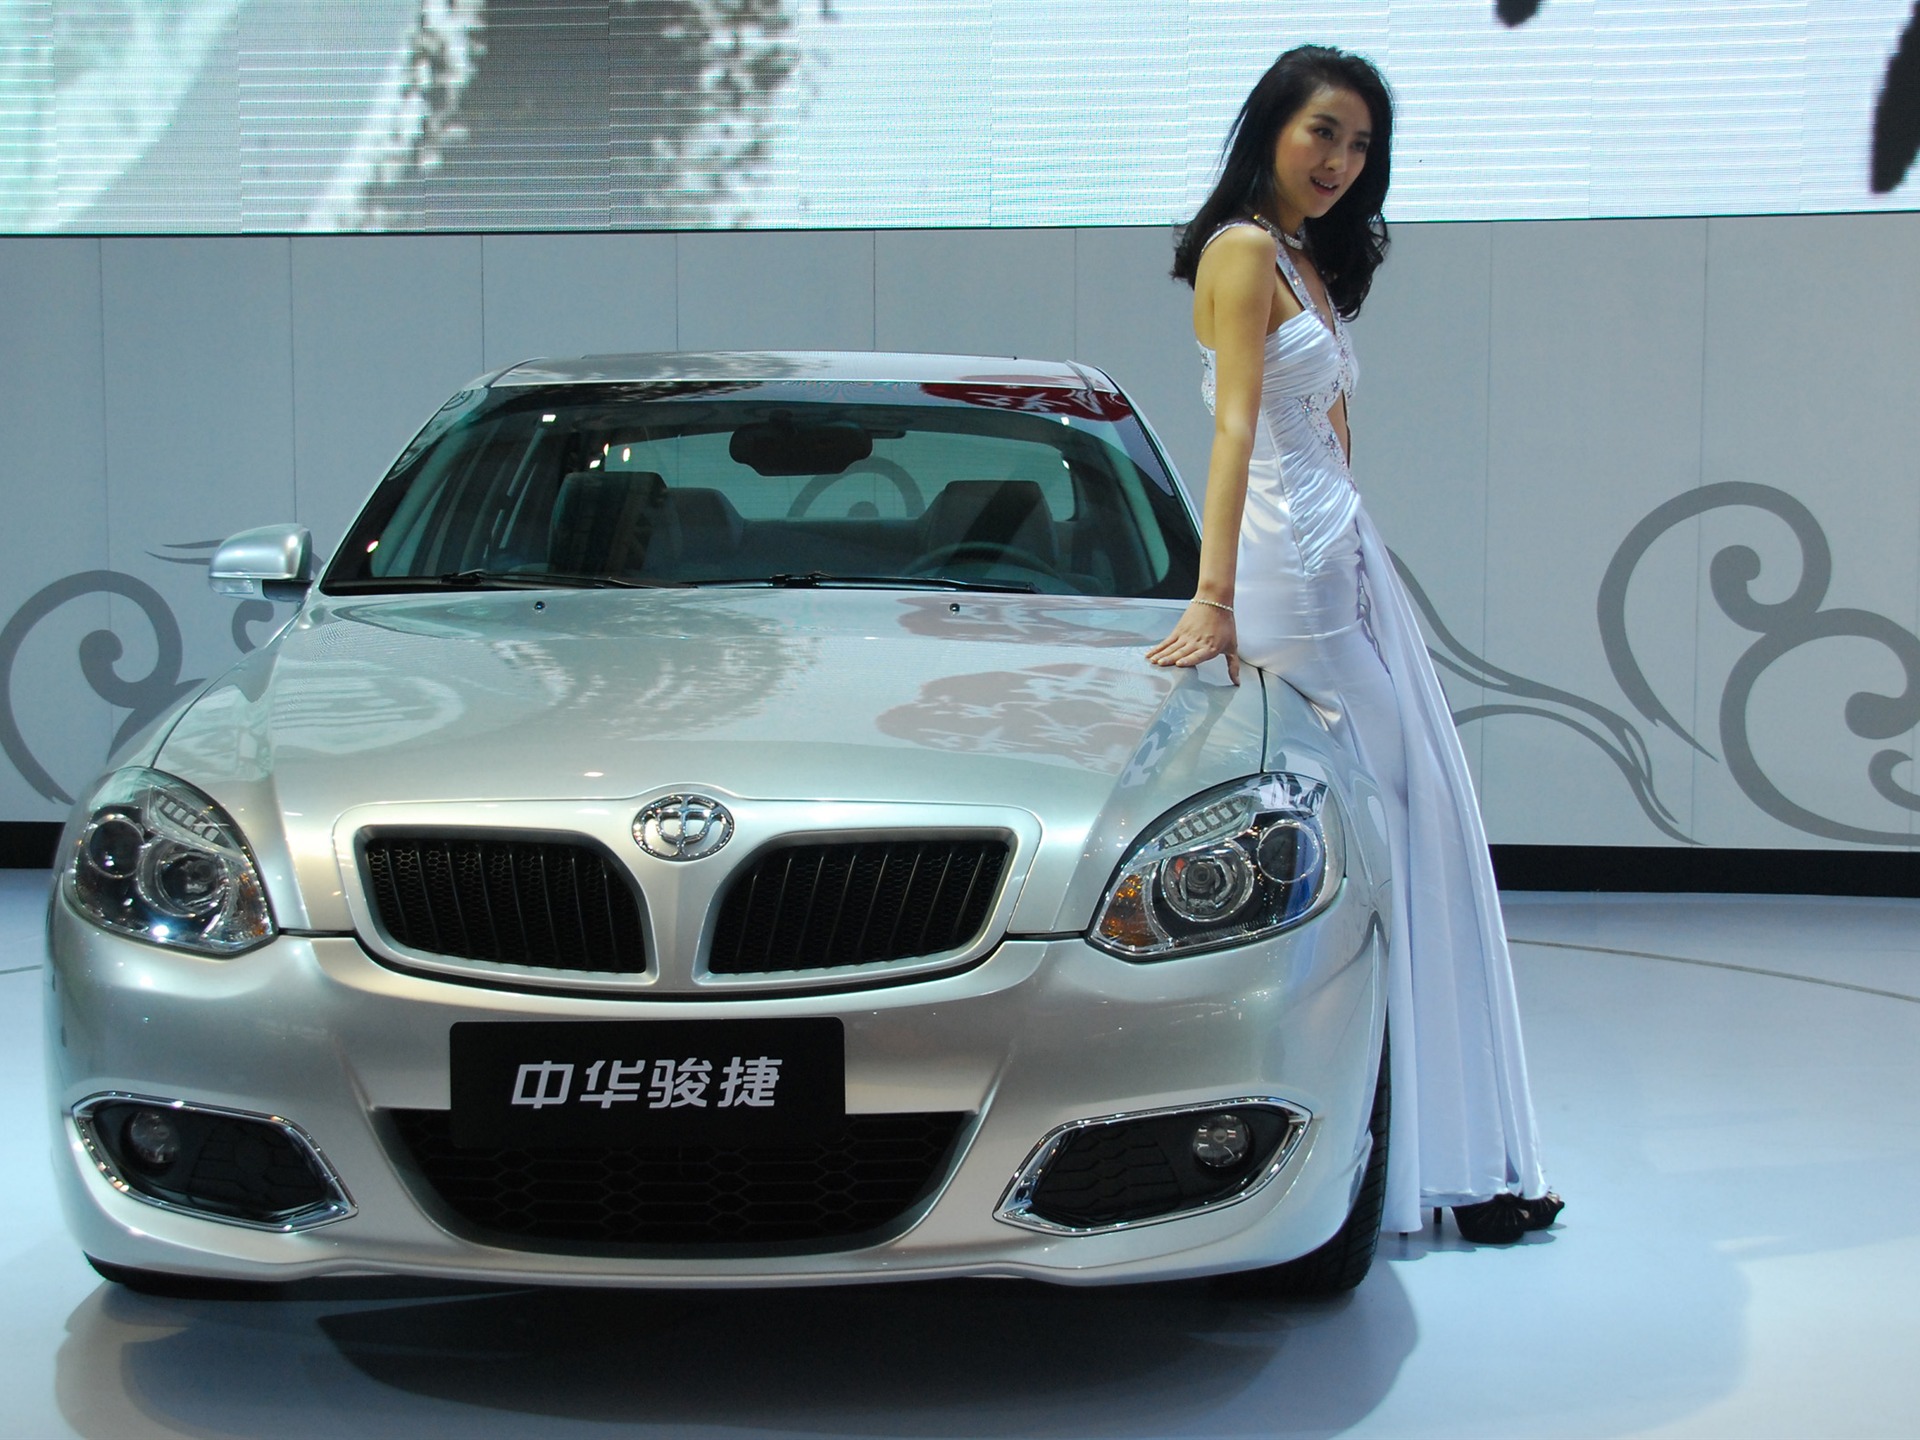 2010 Beijing International Auto Show (1) (z321x123 works) #19 - 1920x1440